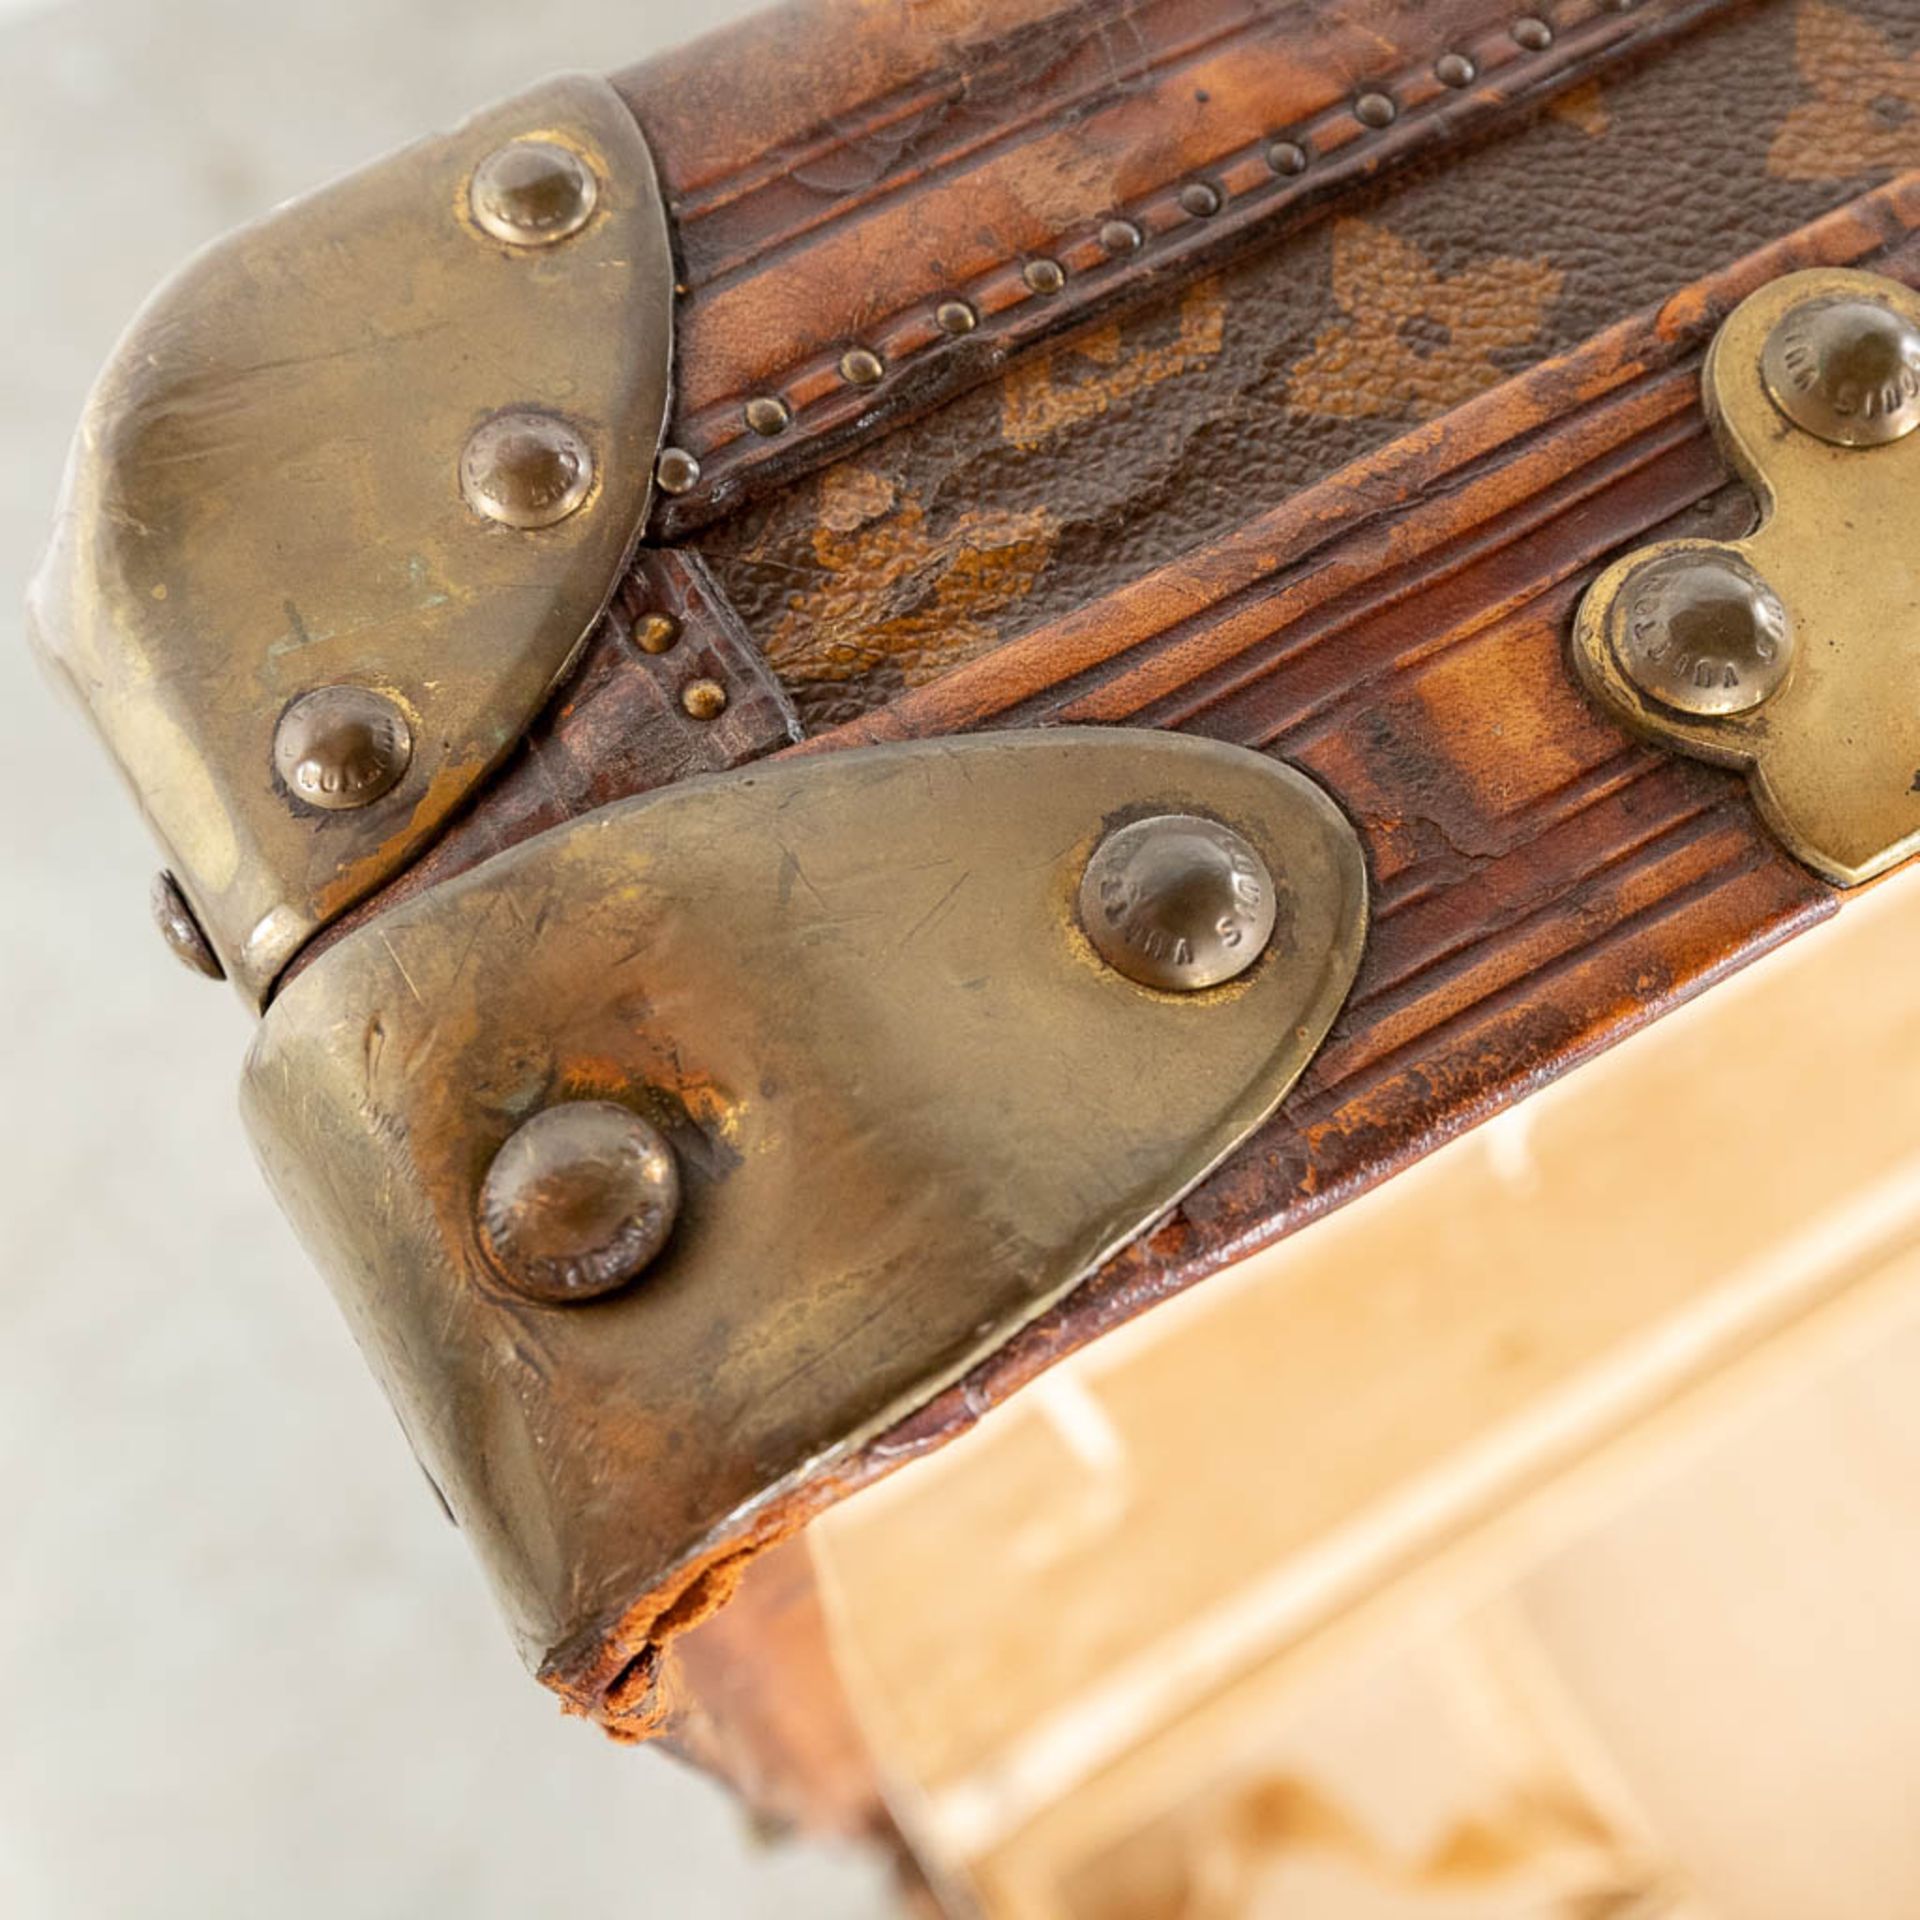 Louis Vuitton, a large and antique suitcase. (L:63 x W:113 x H:72 cm) - Bild 22 aus 25